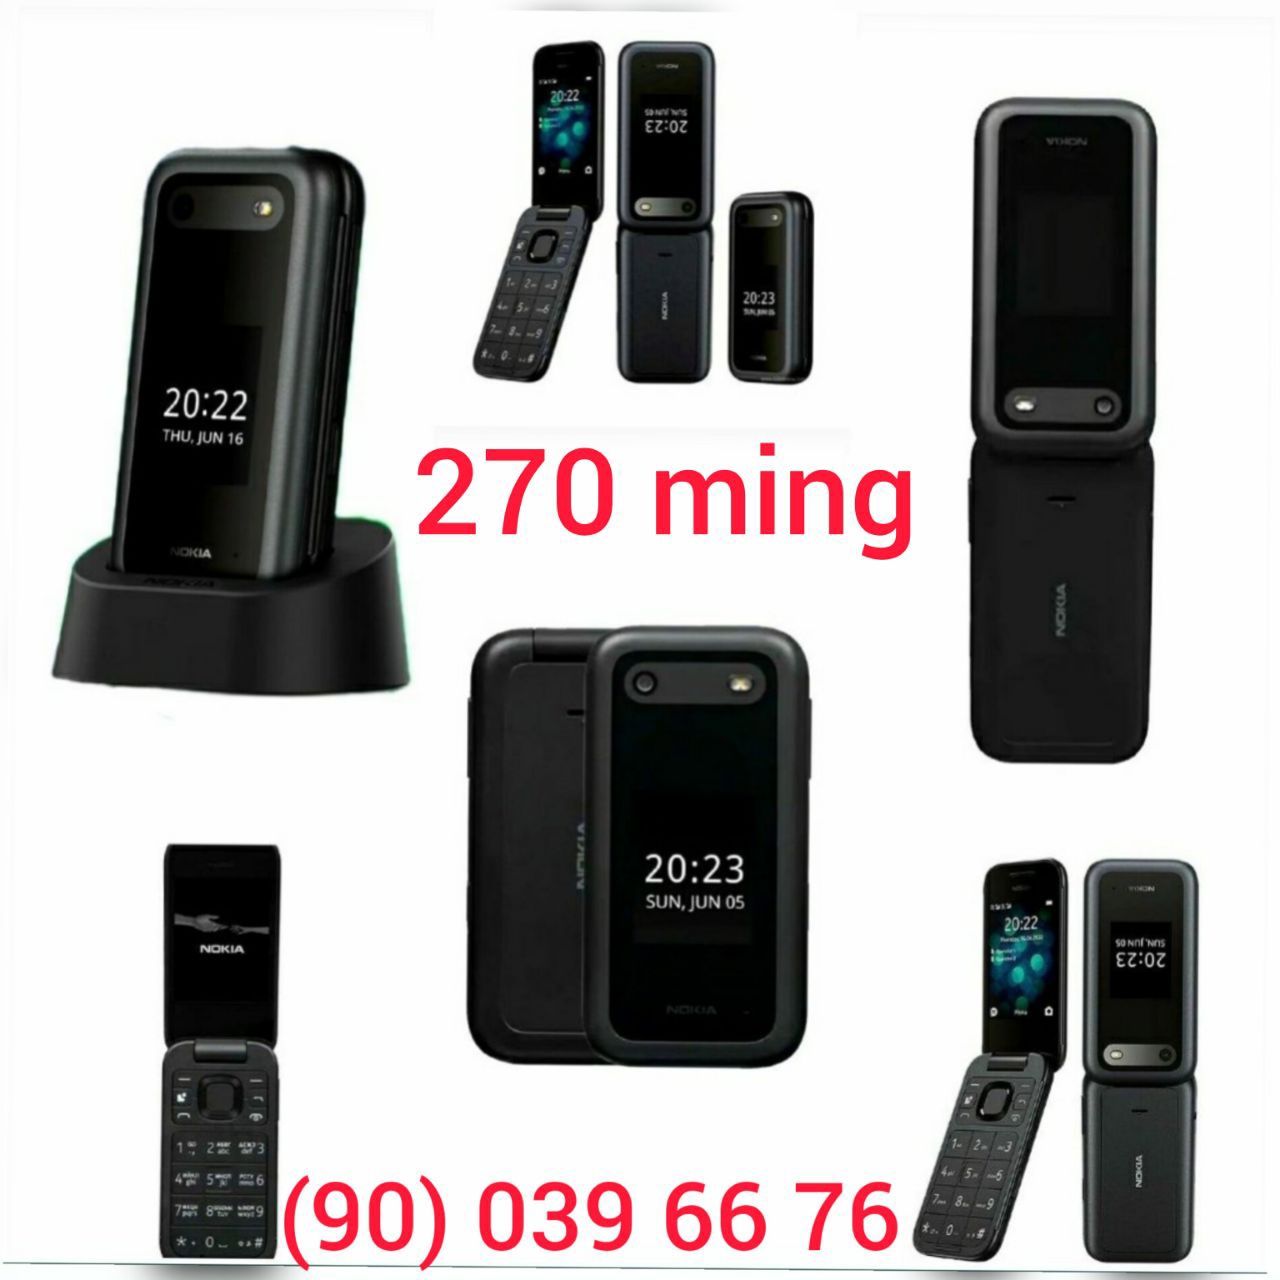 Gusto 3 (B311V) Samsung, Nokia 2720 flip, Nokia 2660 flip, GSM, YENGI.